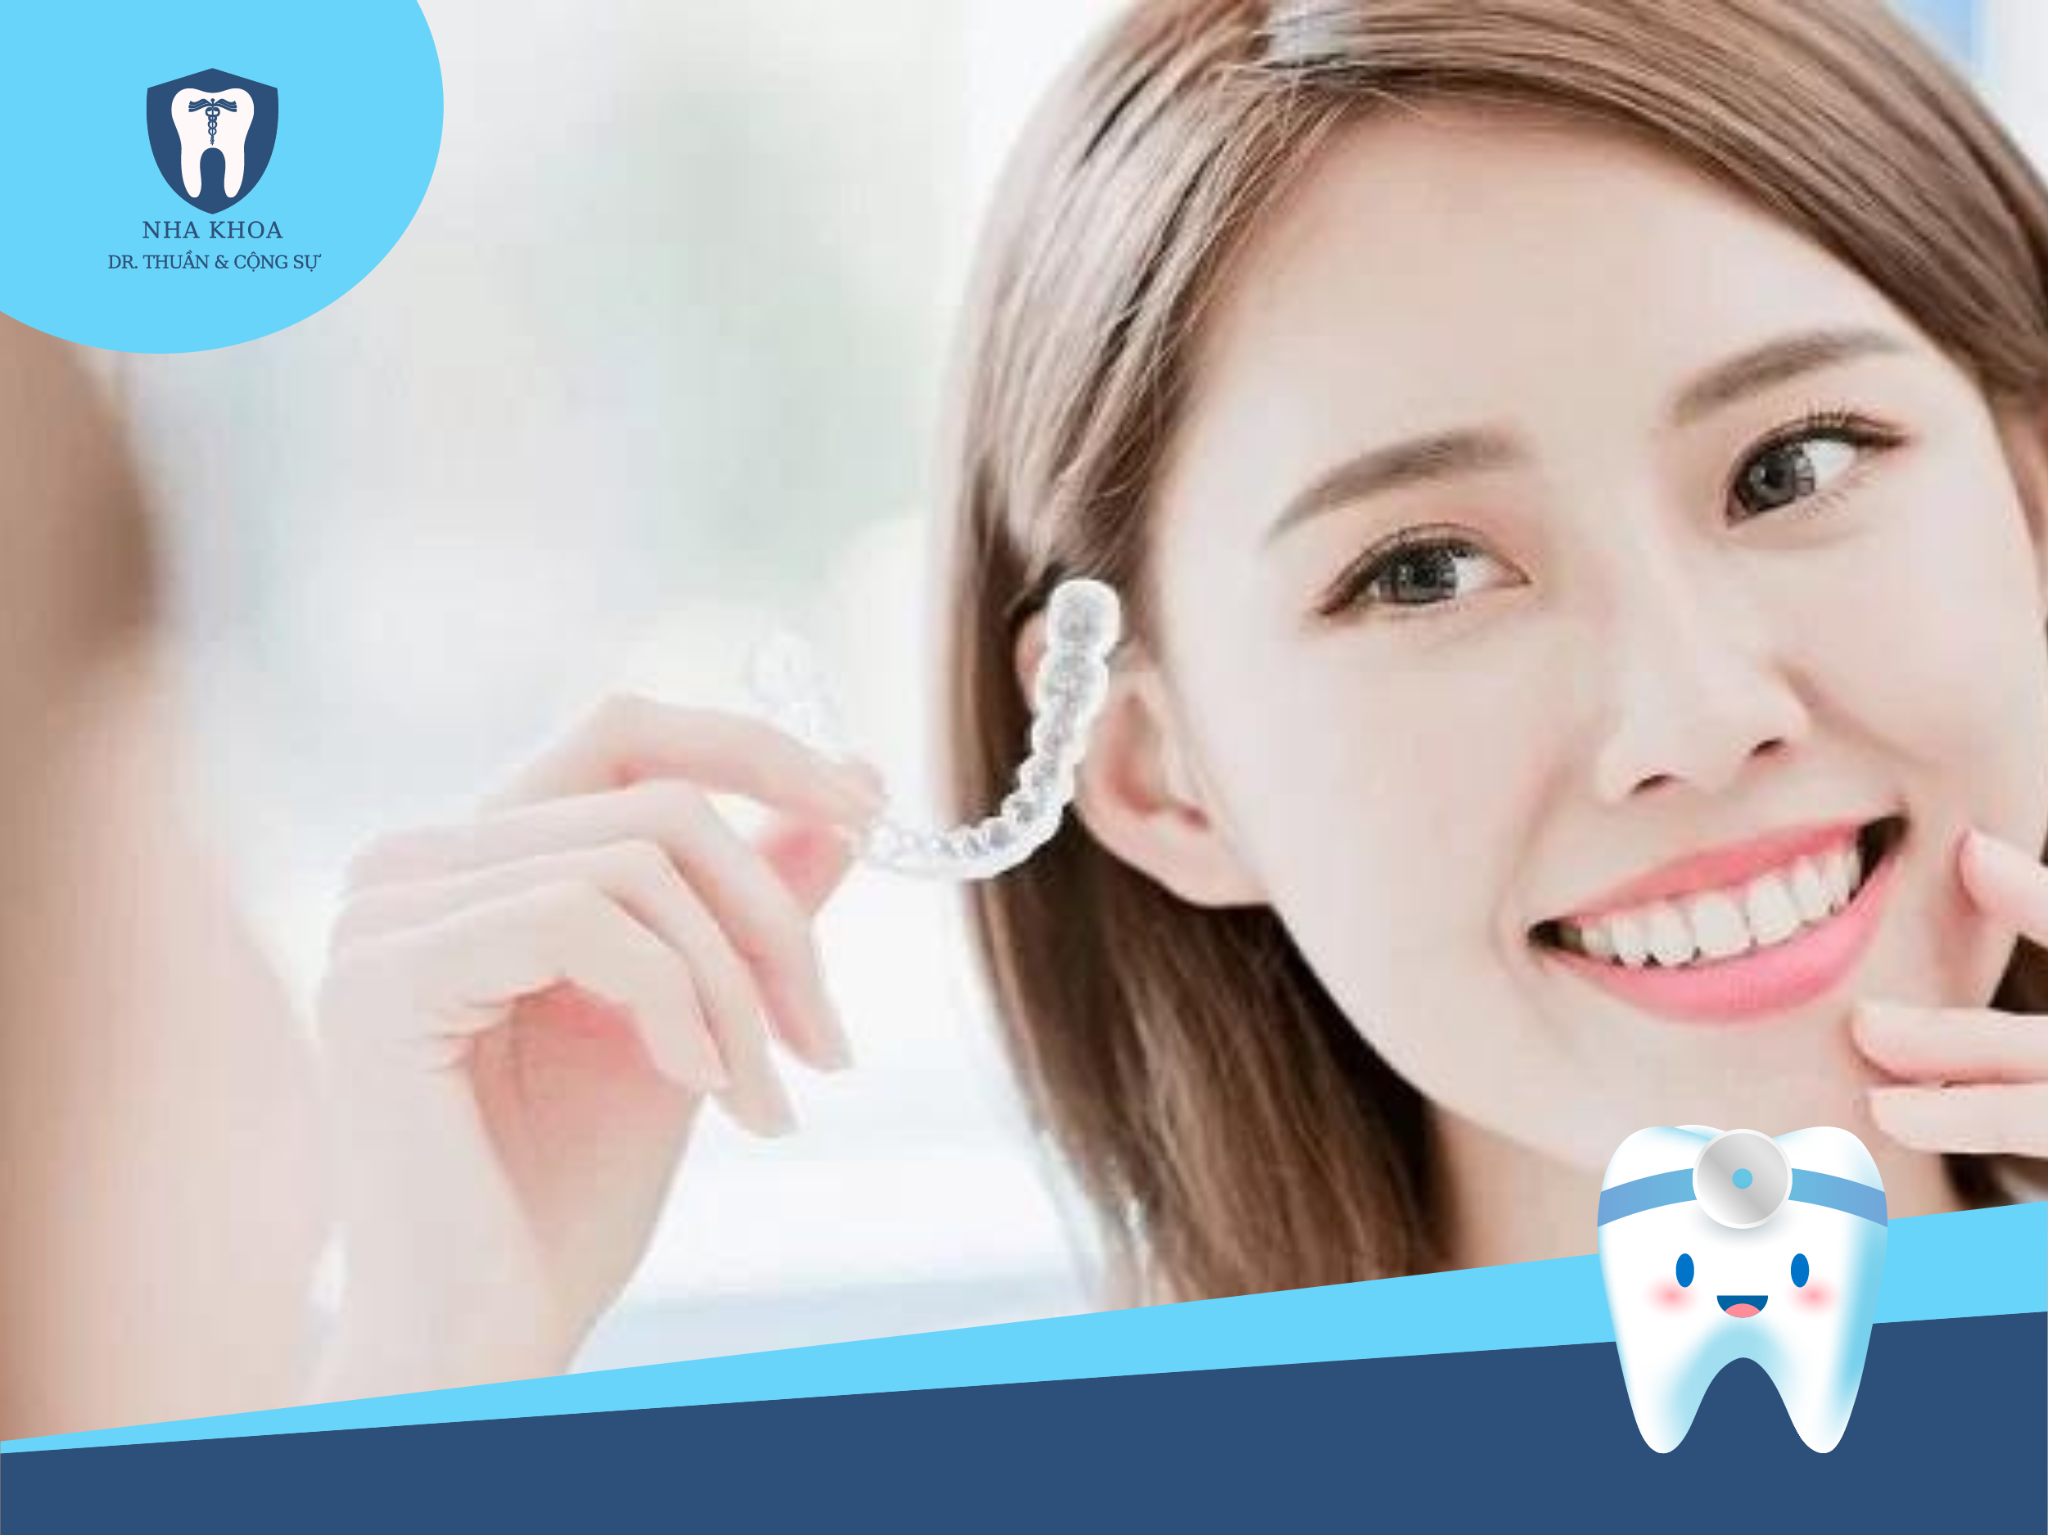 Hiện nay, gần như tất cả các trường hợp răng hô và lệch răng đều có thể điều trị bằng Invisalign